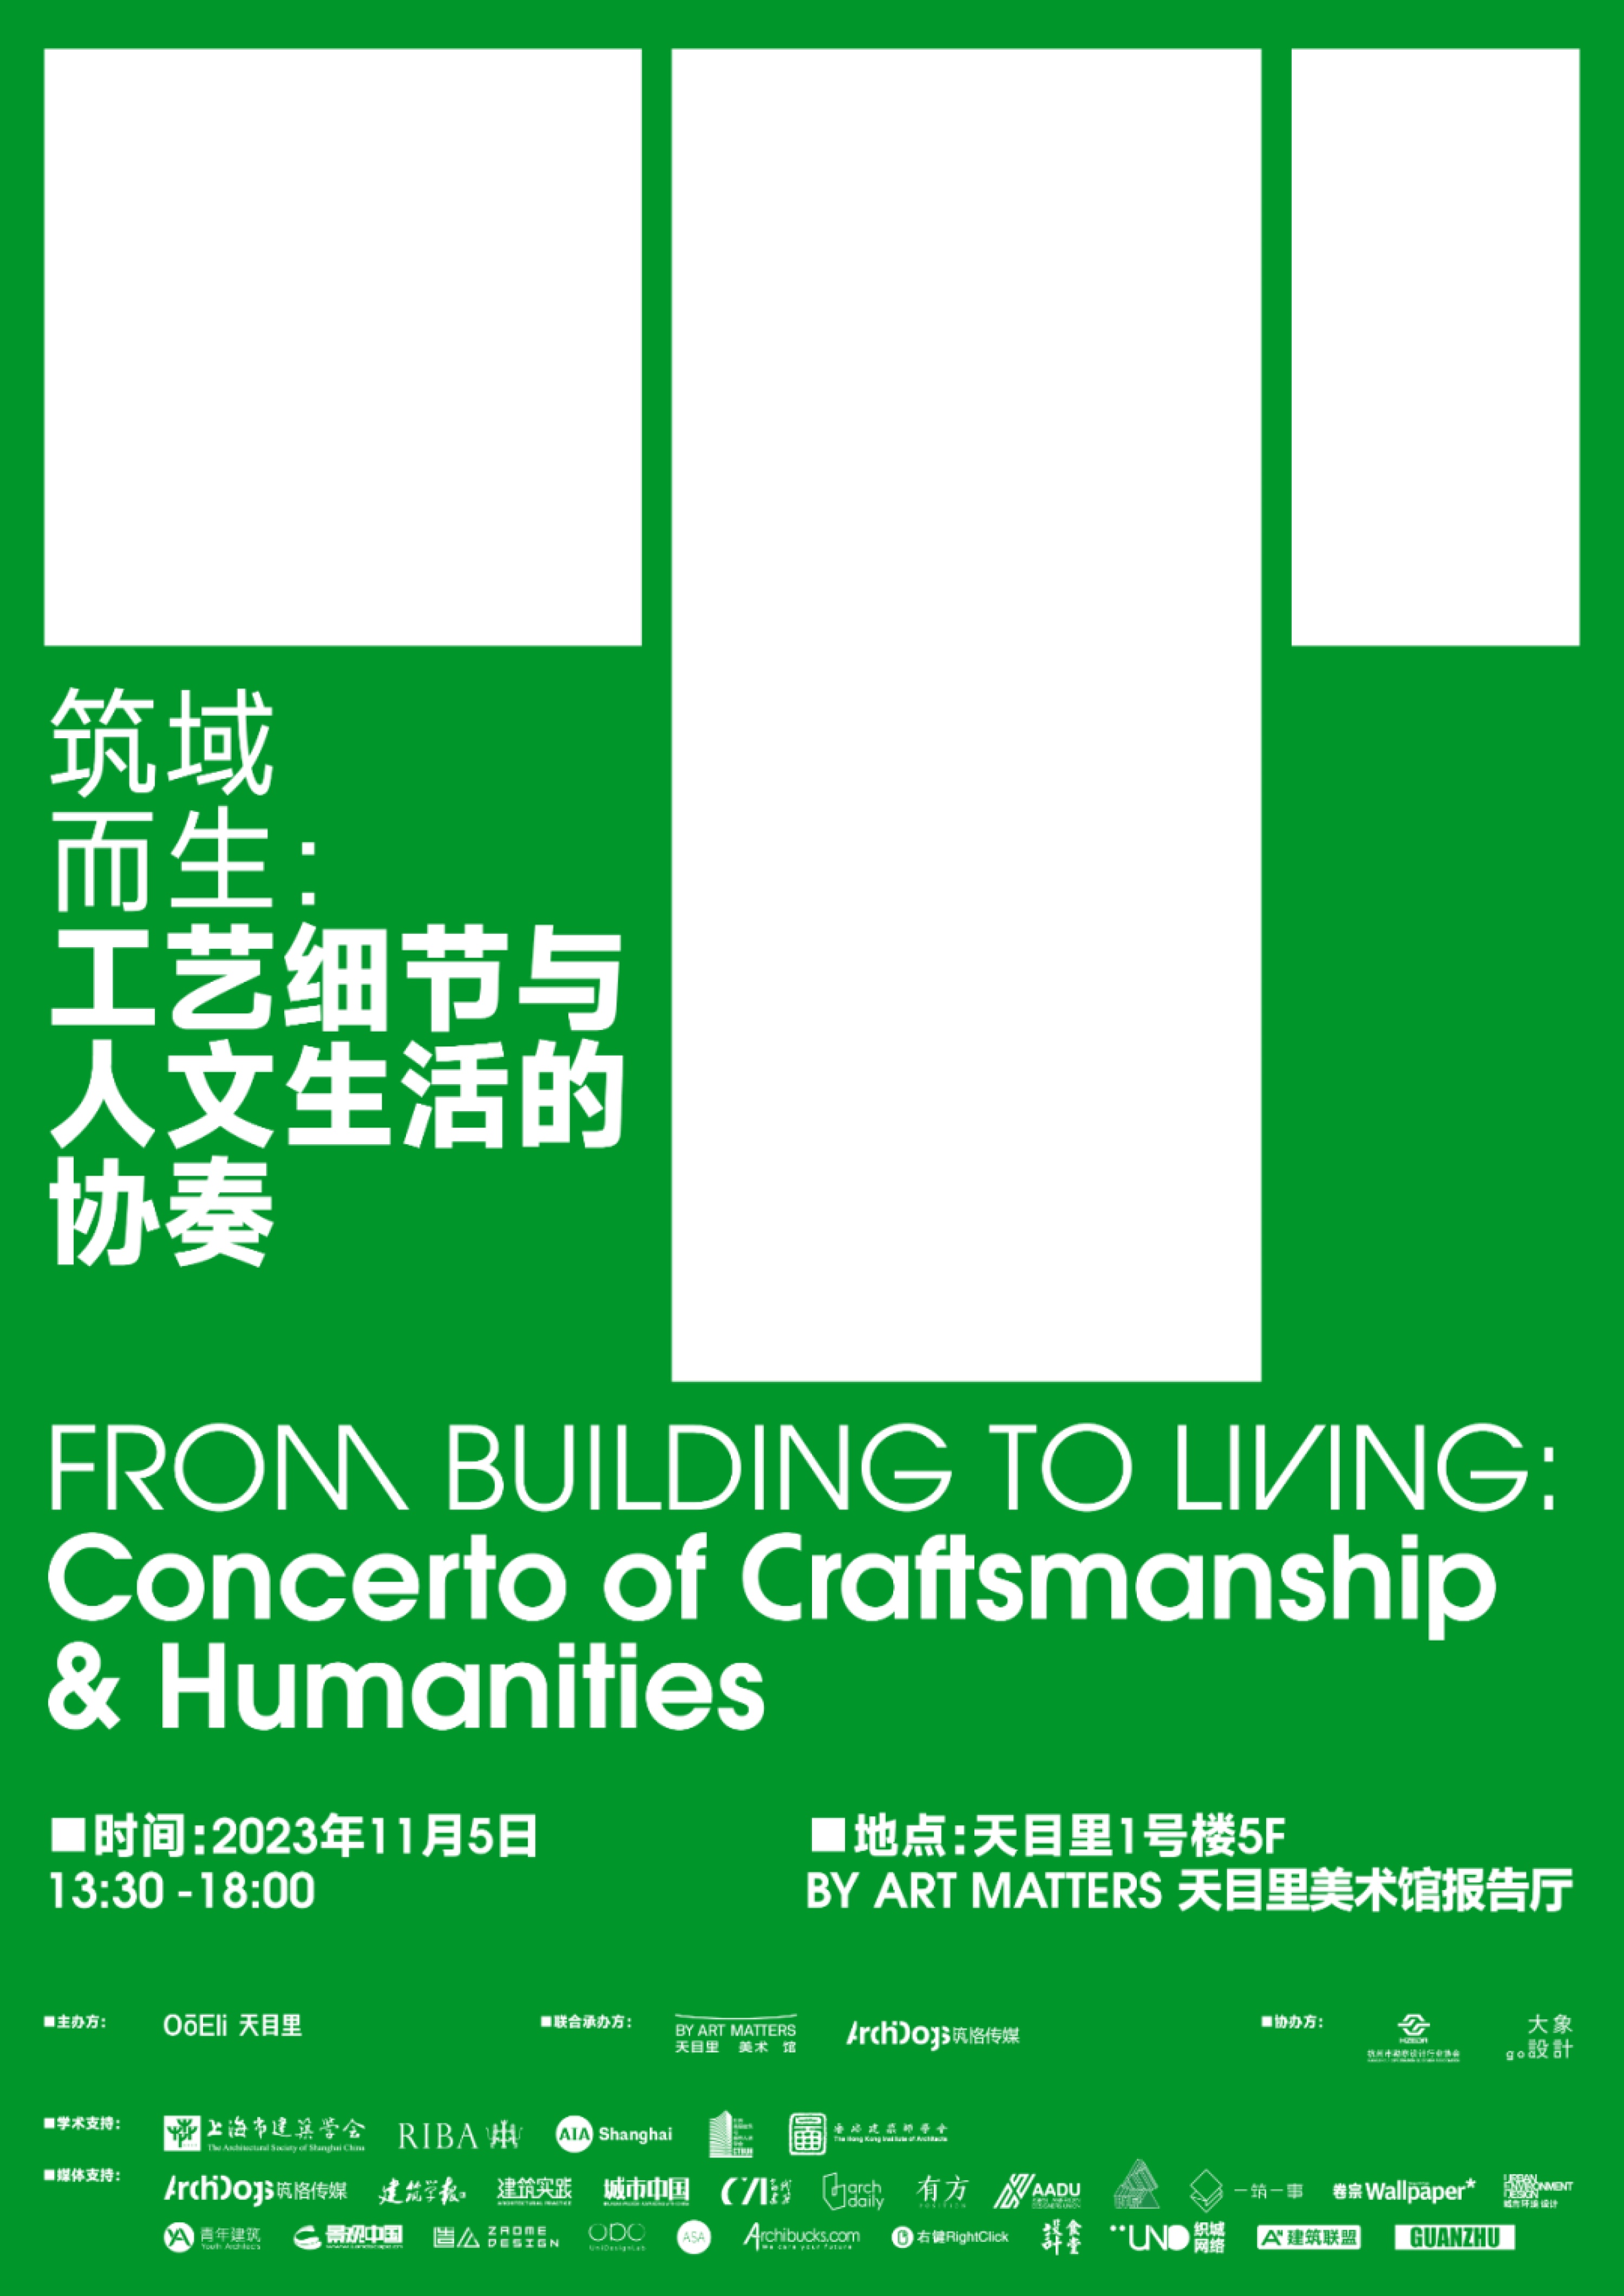 王子耕は杭州天目里「レンゾ・ピアノ建築アトリエ―その建築に身を置く」展示建築フォーラムに招かれ、ラウンドテーブルモデレーターに